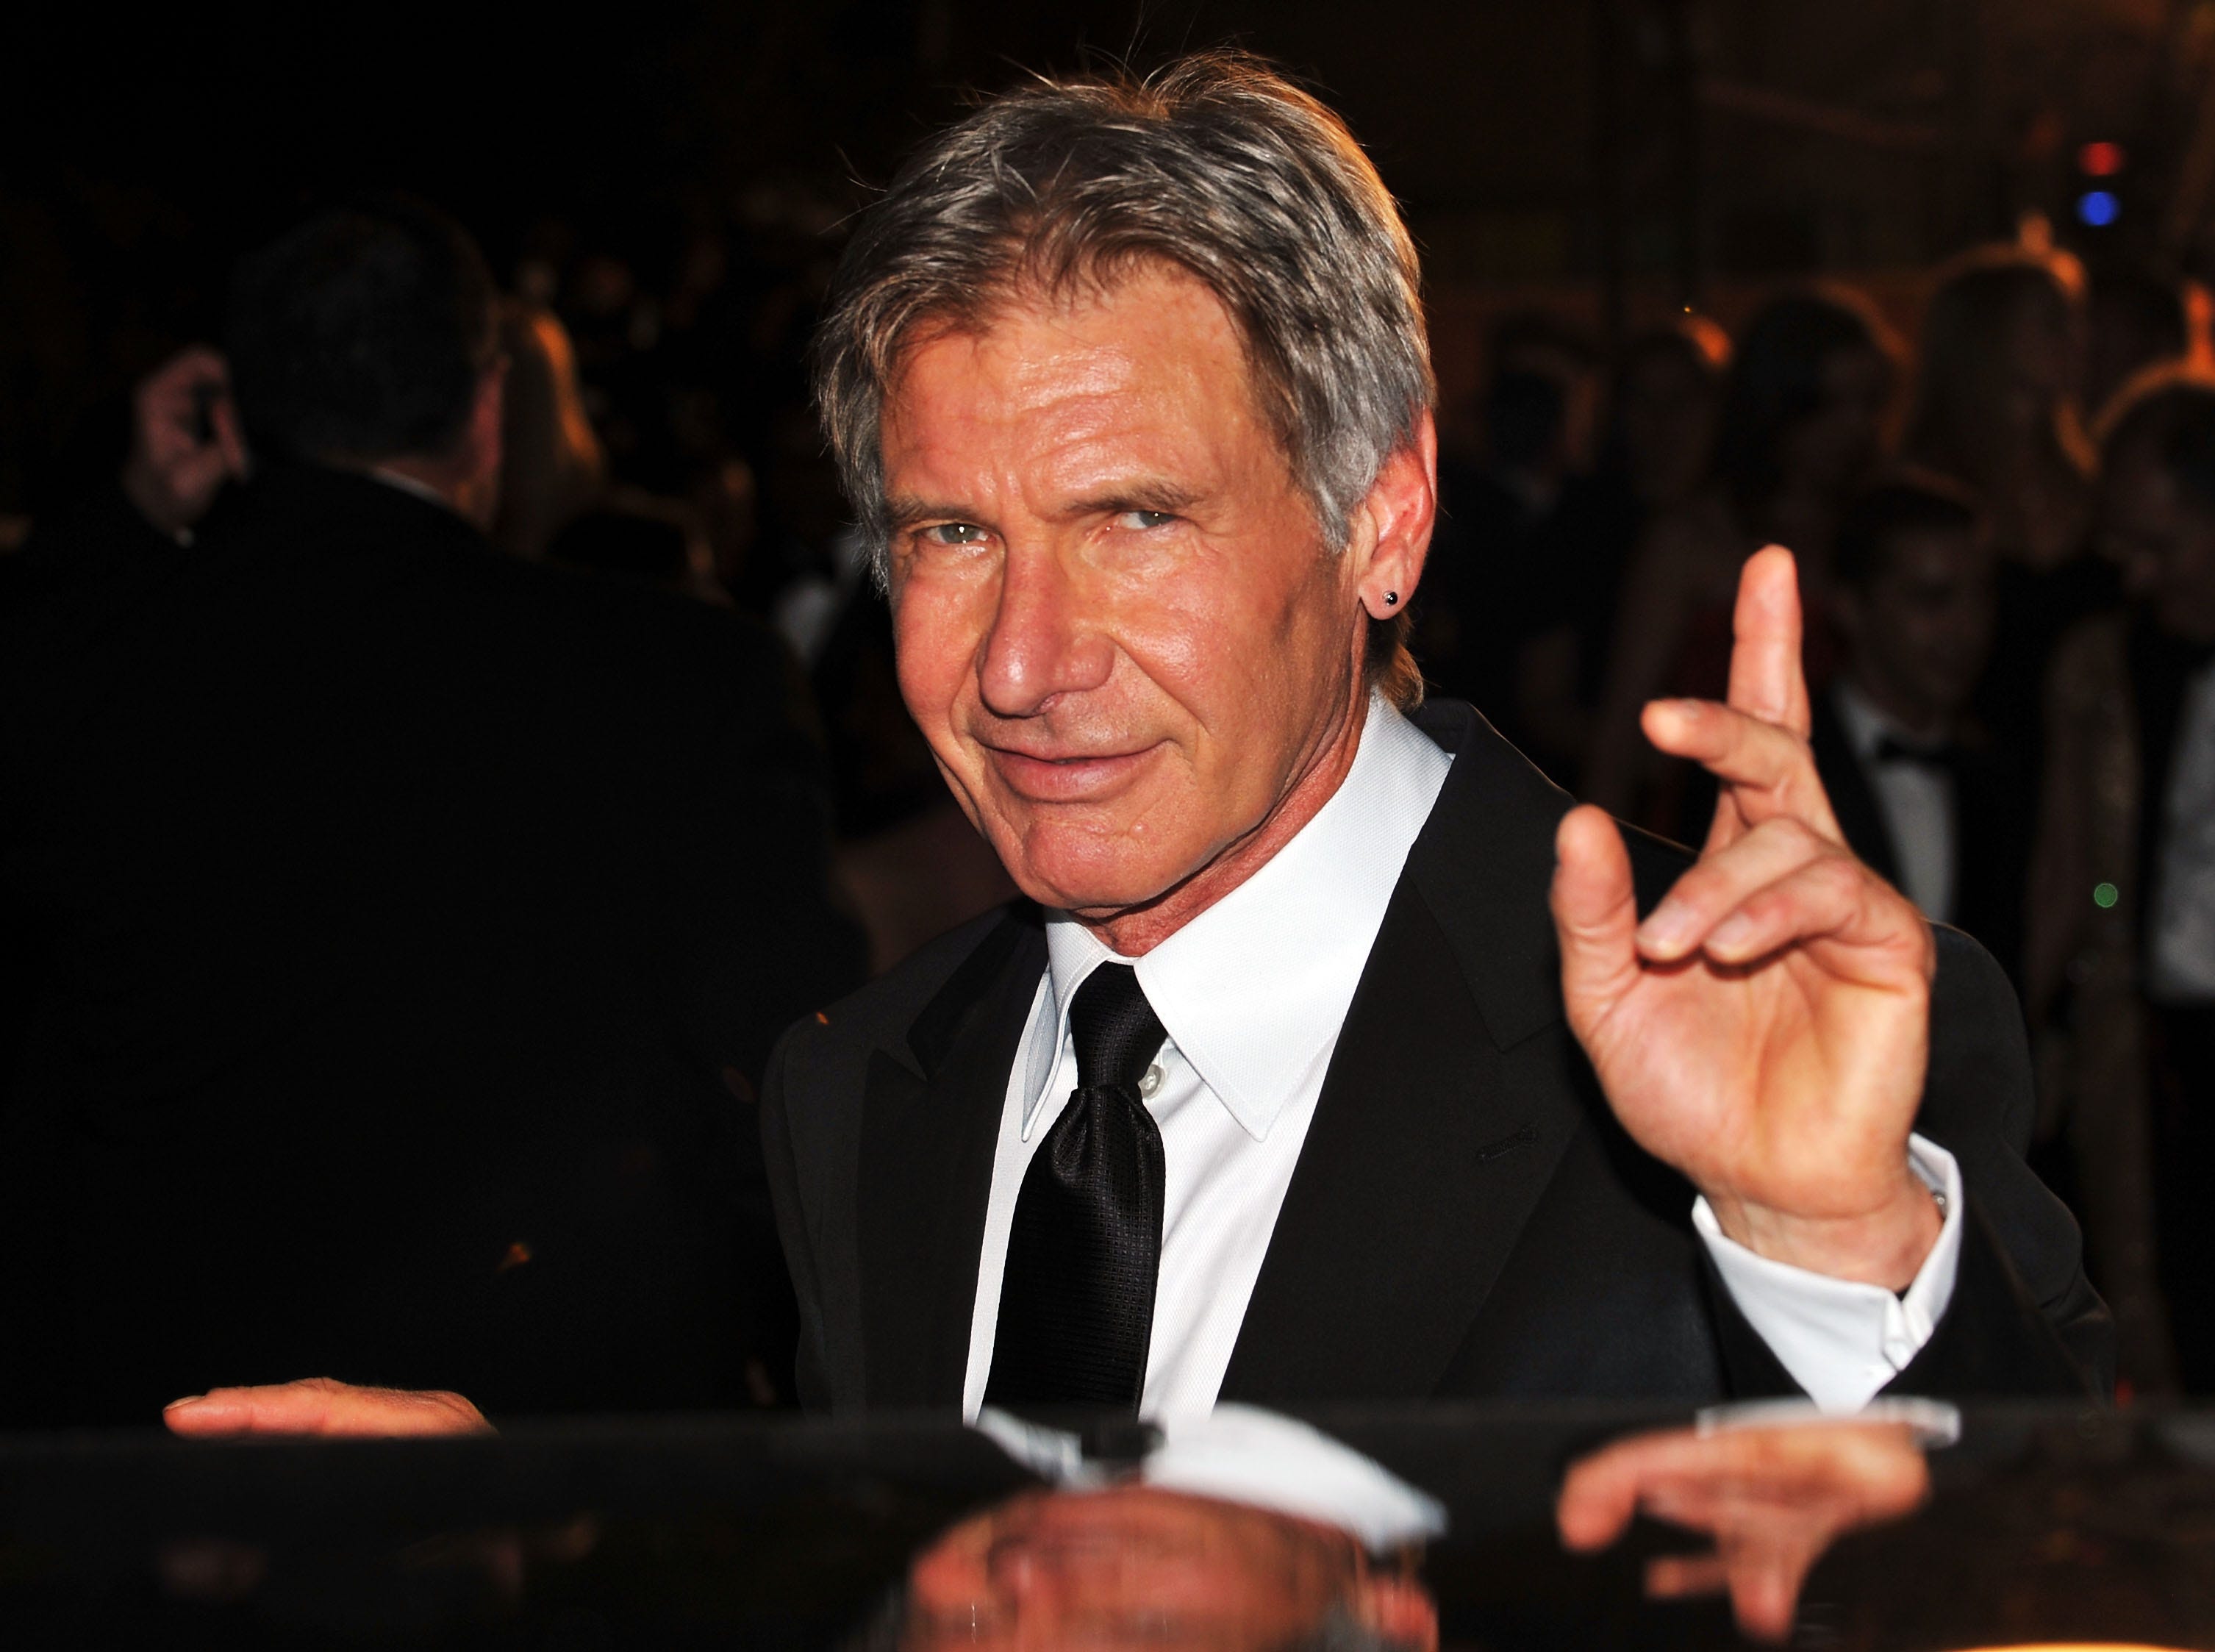 Harrison Ford surprises ‘Star Wars’ fans with sneak peek of ‘Indiana Jones 5’